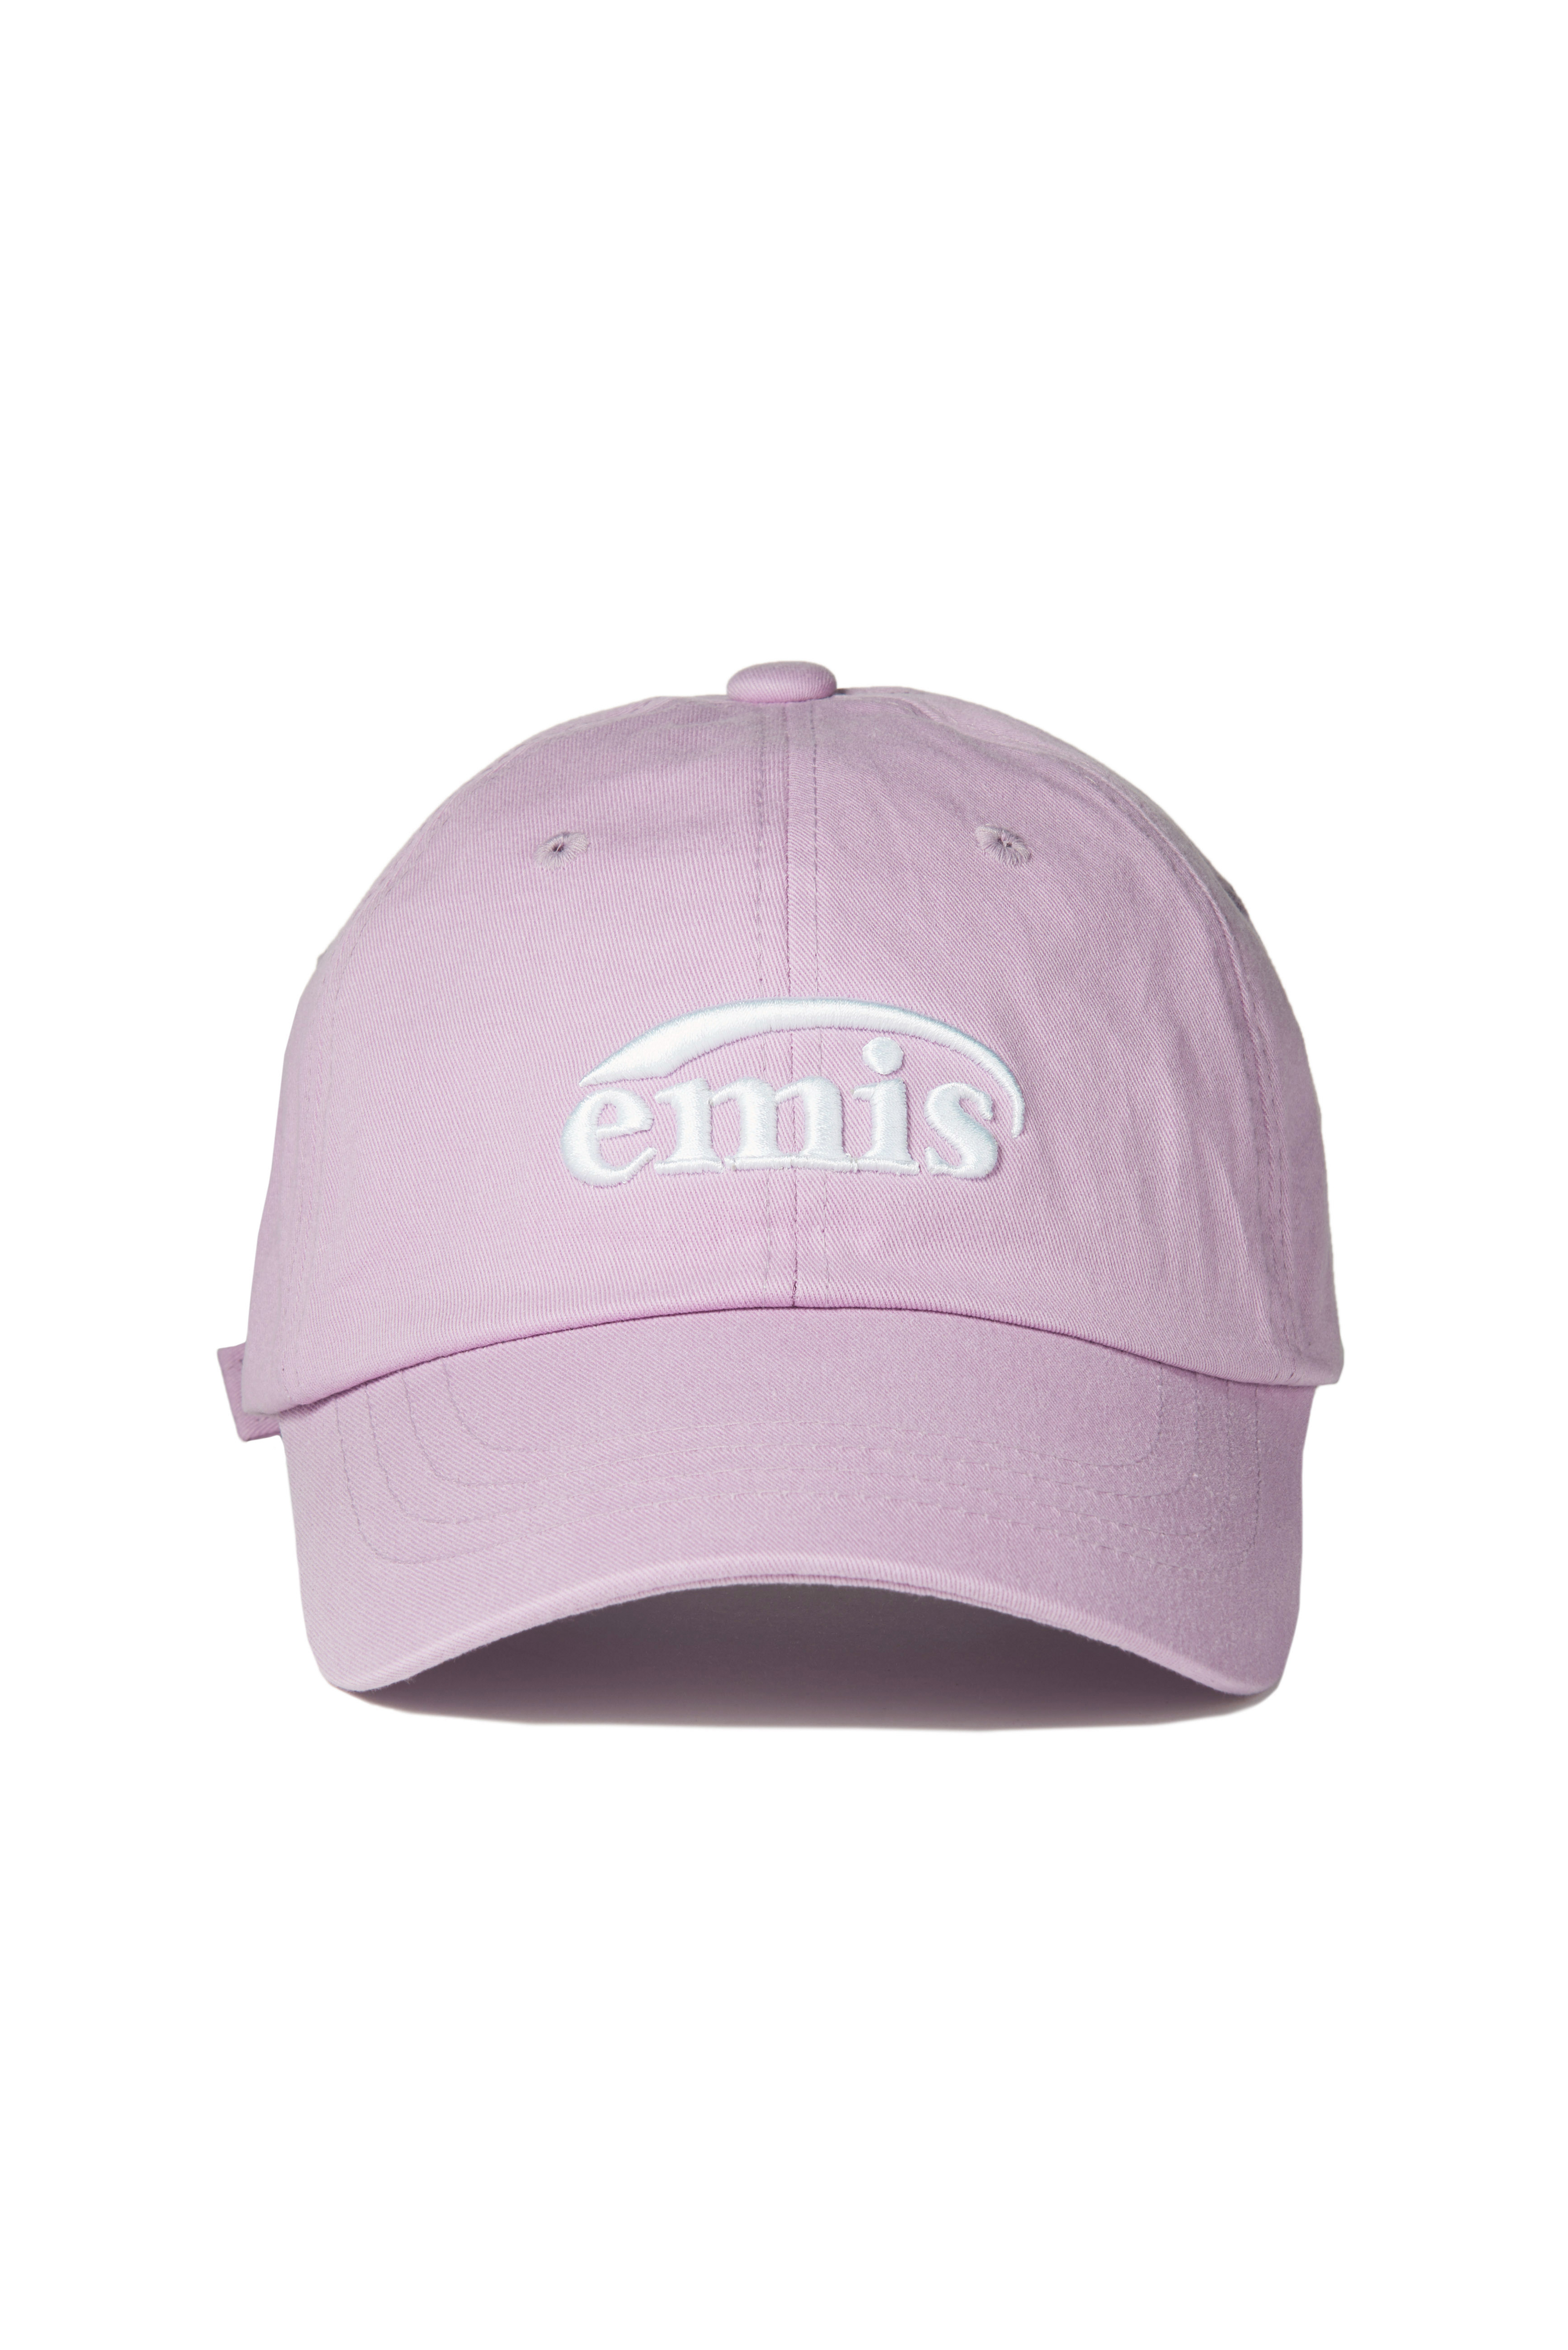 ❗🇰🇷韓國正版❗ emis 帽子 EMIS字母刺繡 新LOGO 休閒可調節棒球帽 （6色可選）